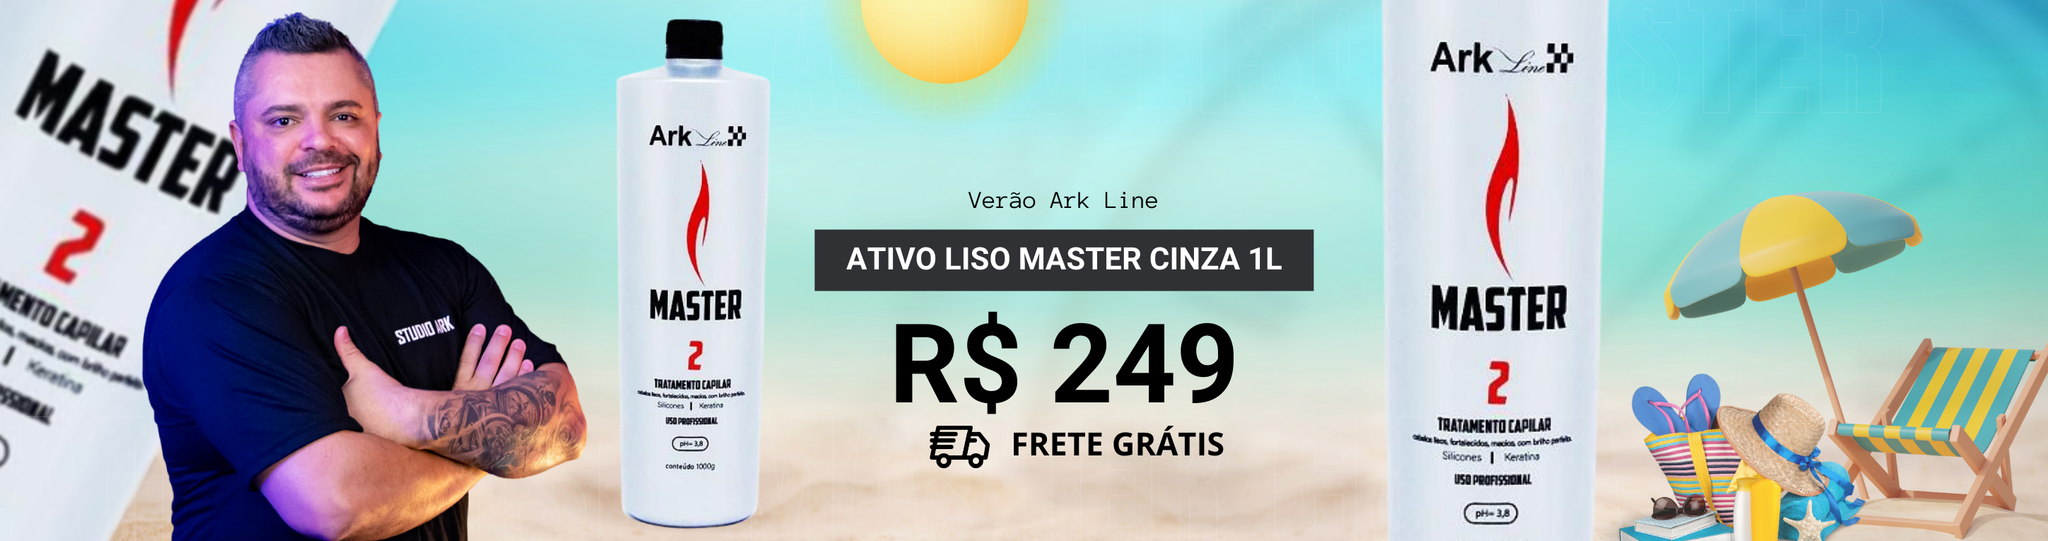 Ativo Master Cinza 1L Promoção